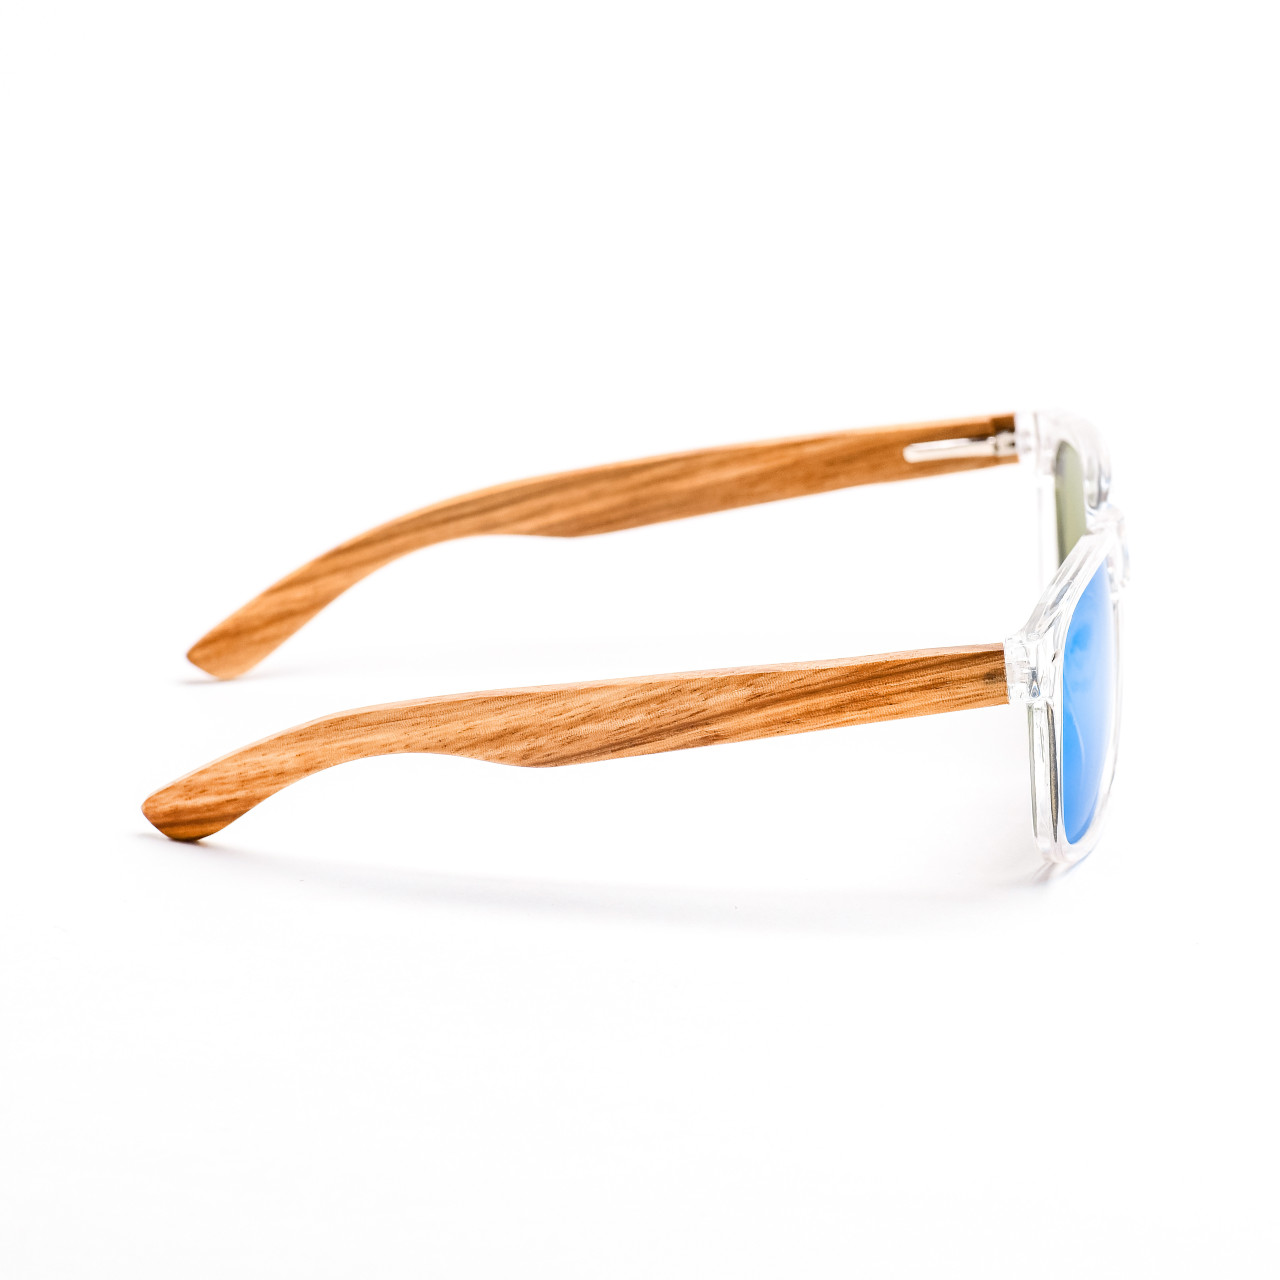 Brýle Classic – modré čočky + průhledné obroučky + zebra